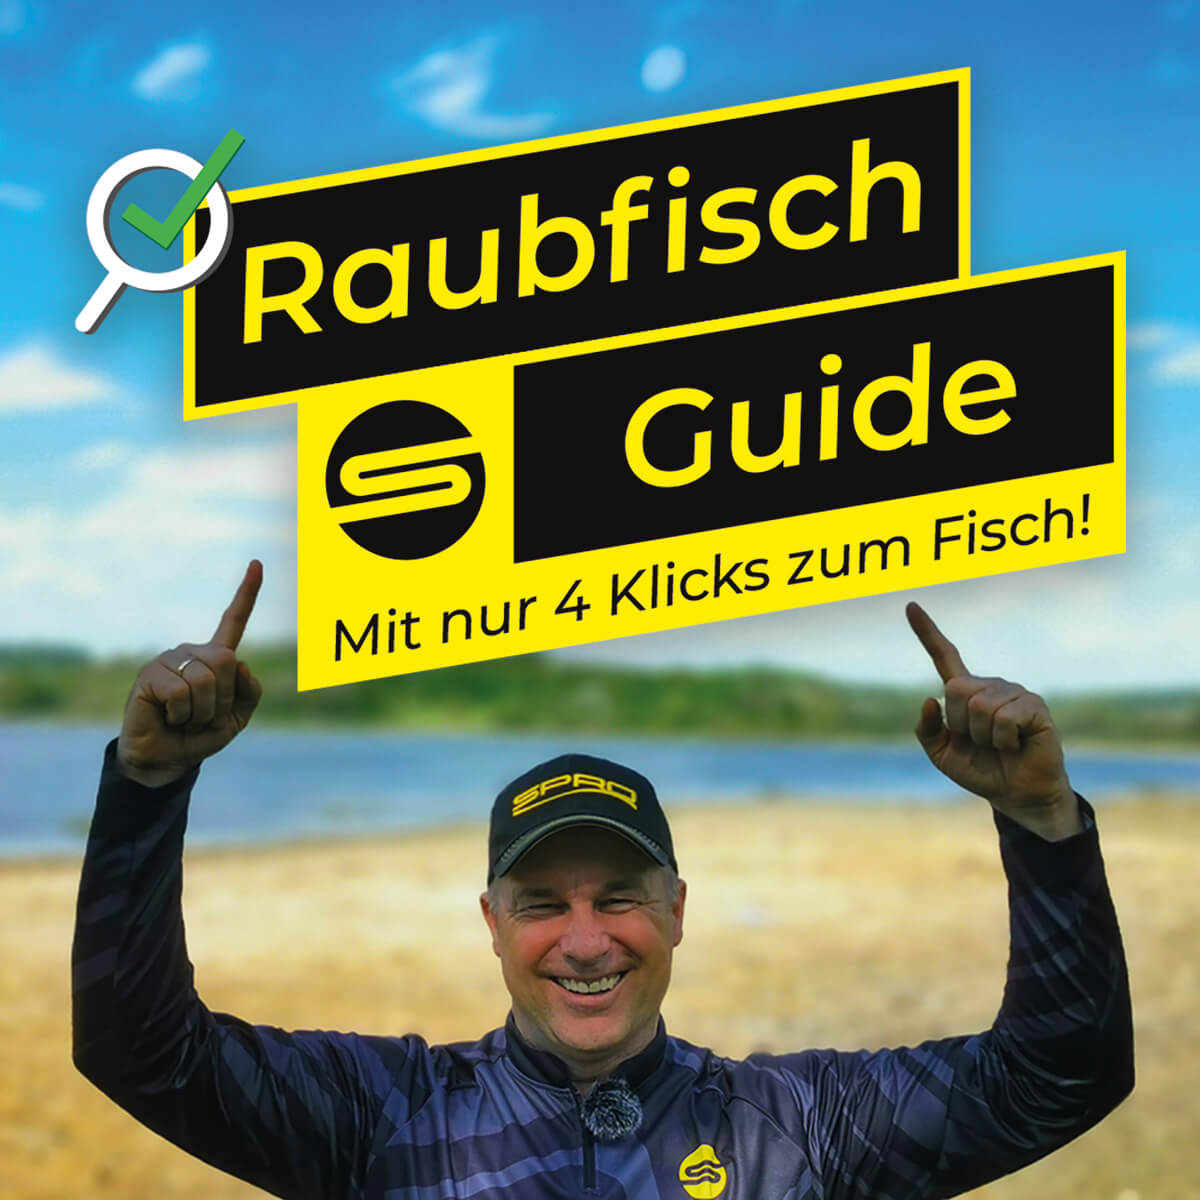 Raubfisch_Guide